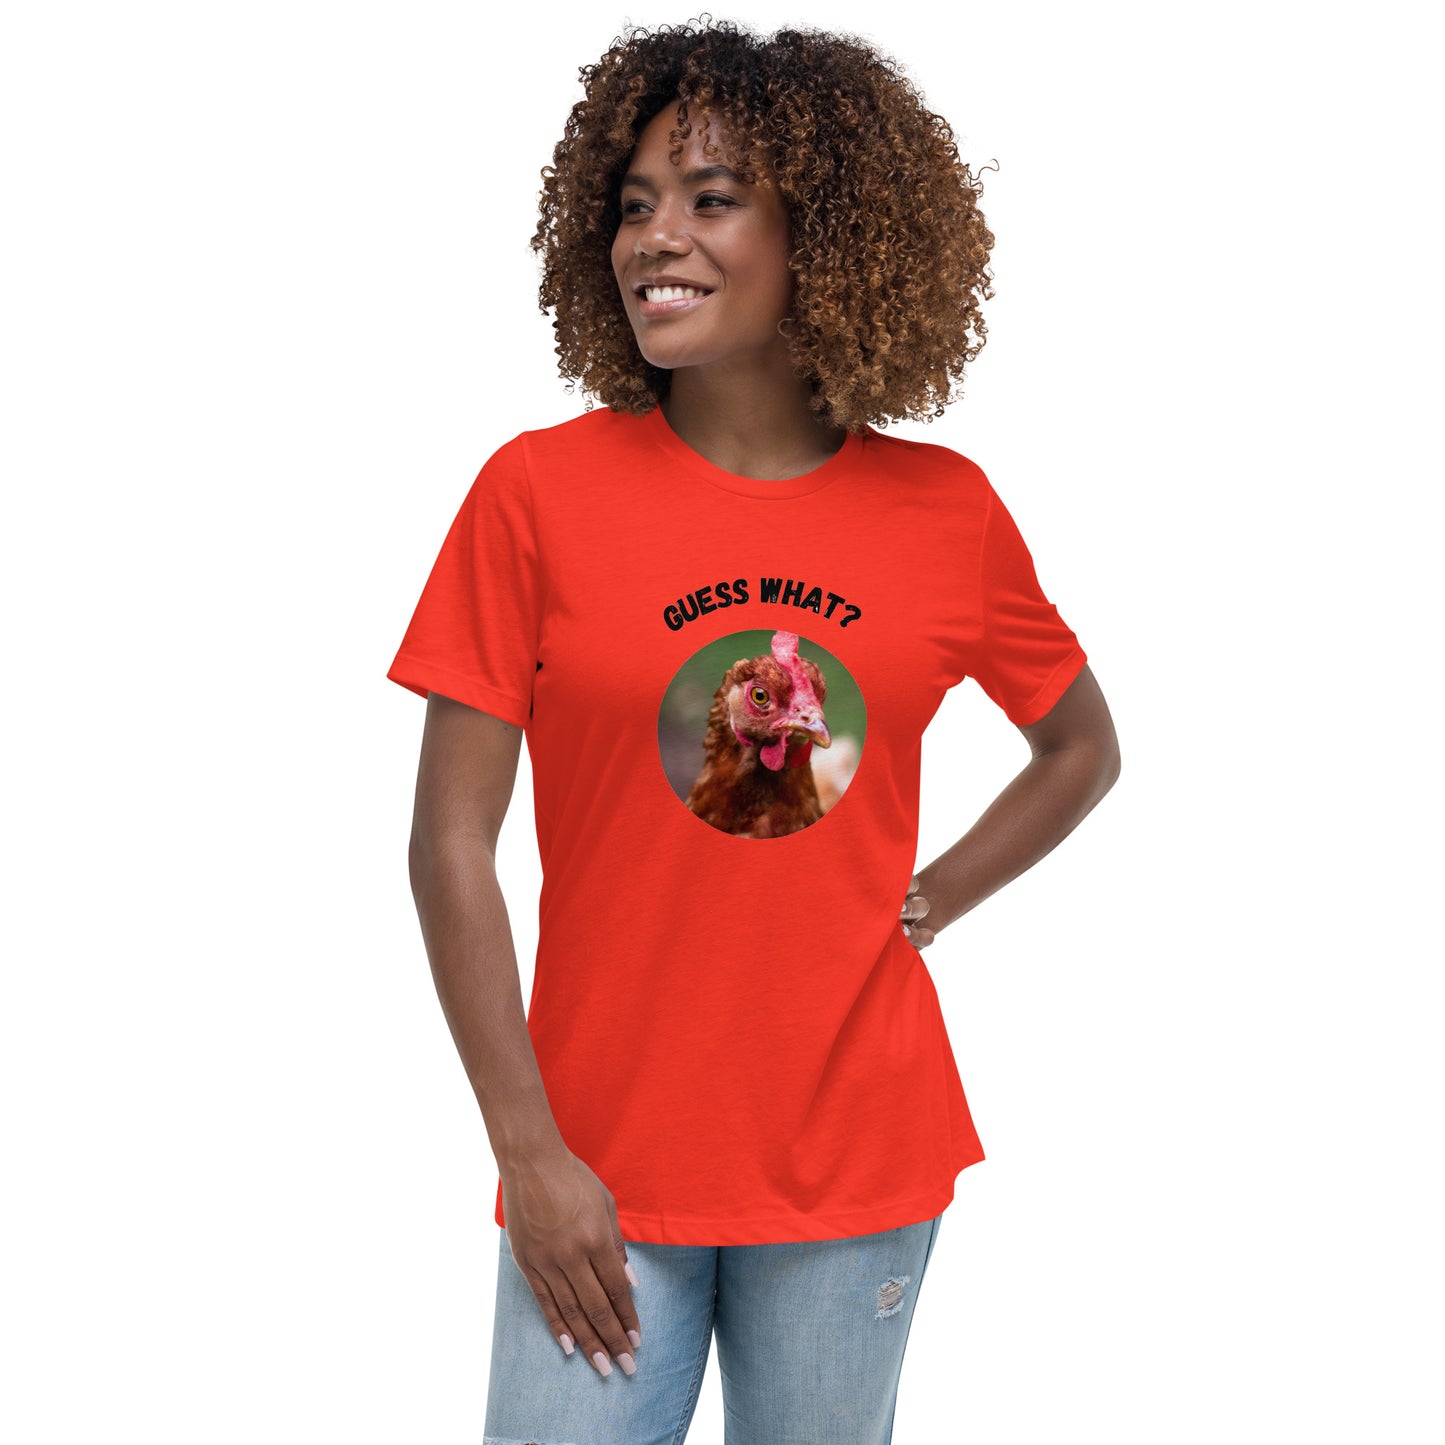 Guess What Chicken Butt - Women's Relaxed T-Shirt